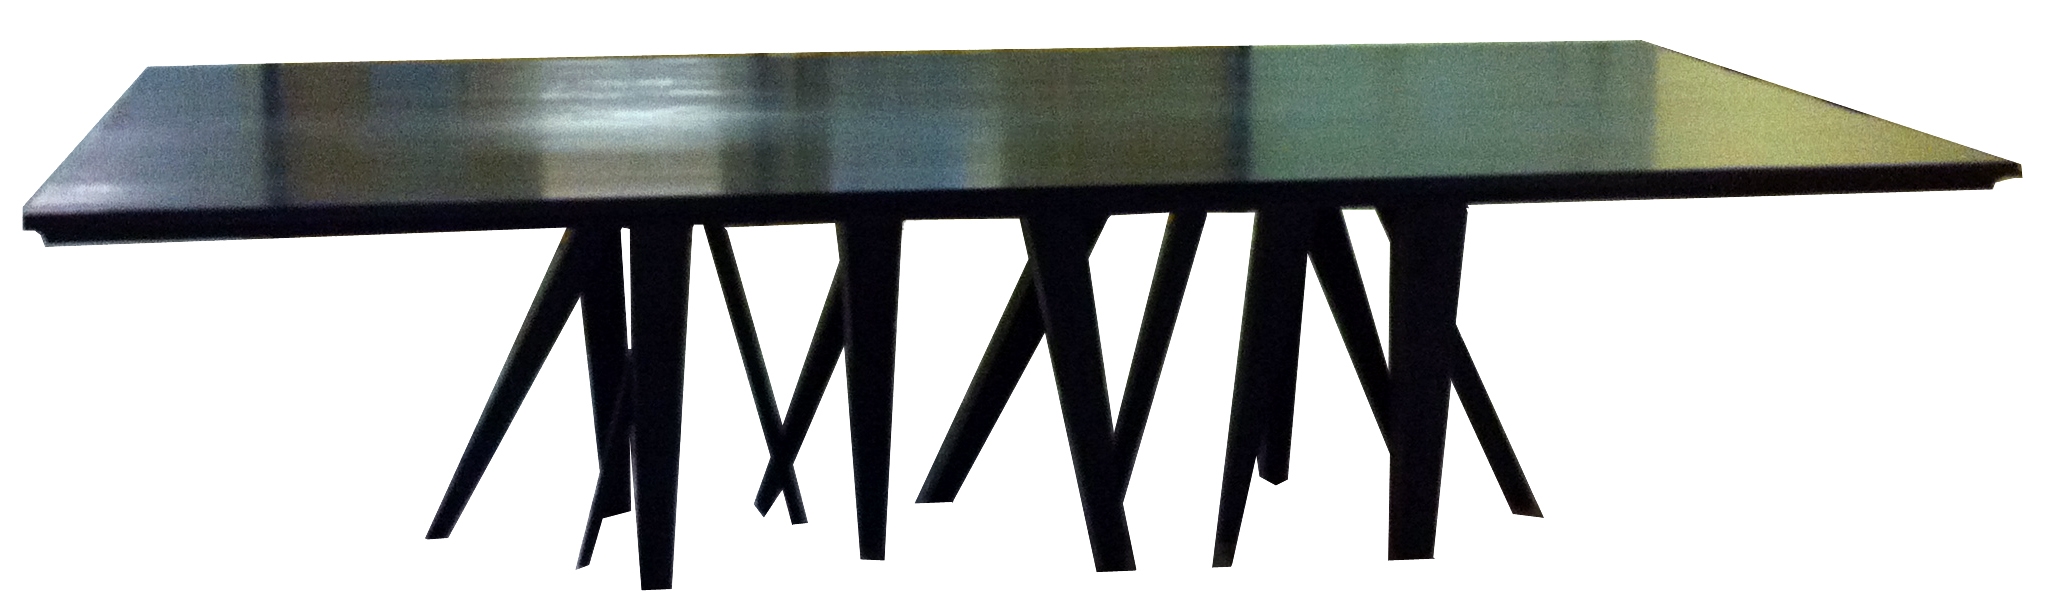 Custom Multi Legged Dining Table